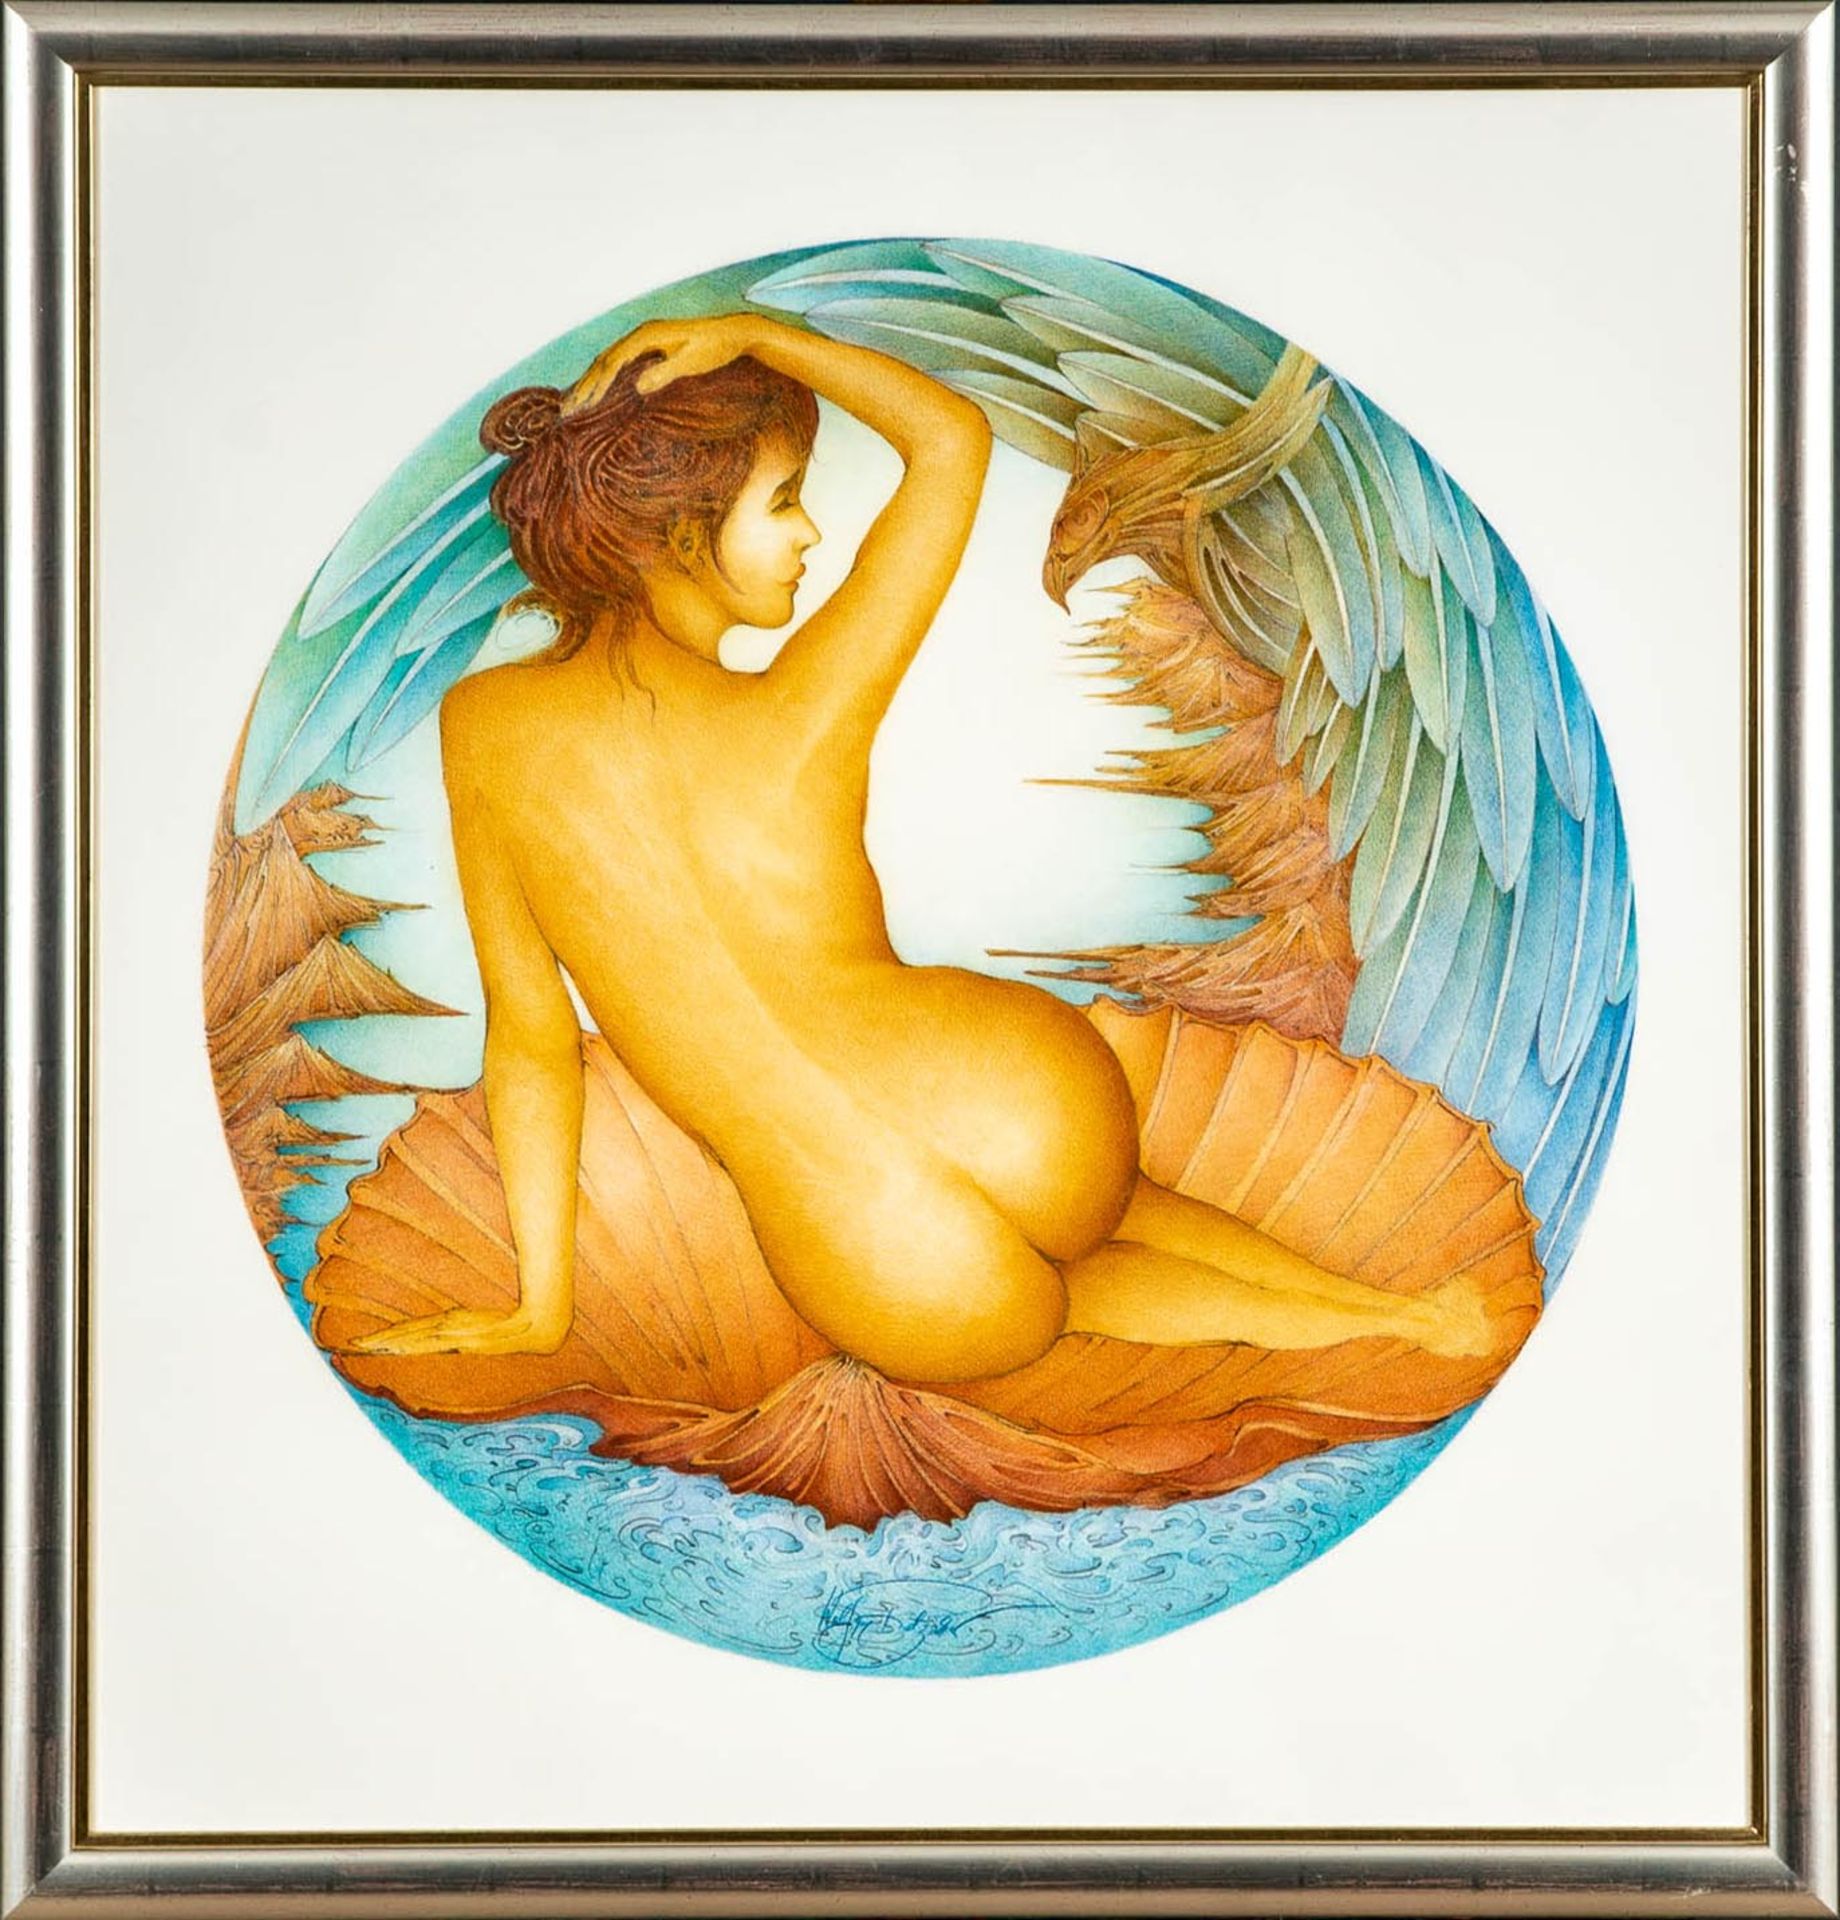 "Venus in der Muschel", multiple Farblithographie des Wolfgang Fratscher ( 1944 Rendsburg - 2009 Bu